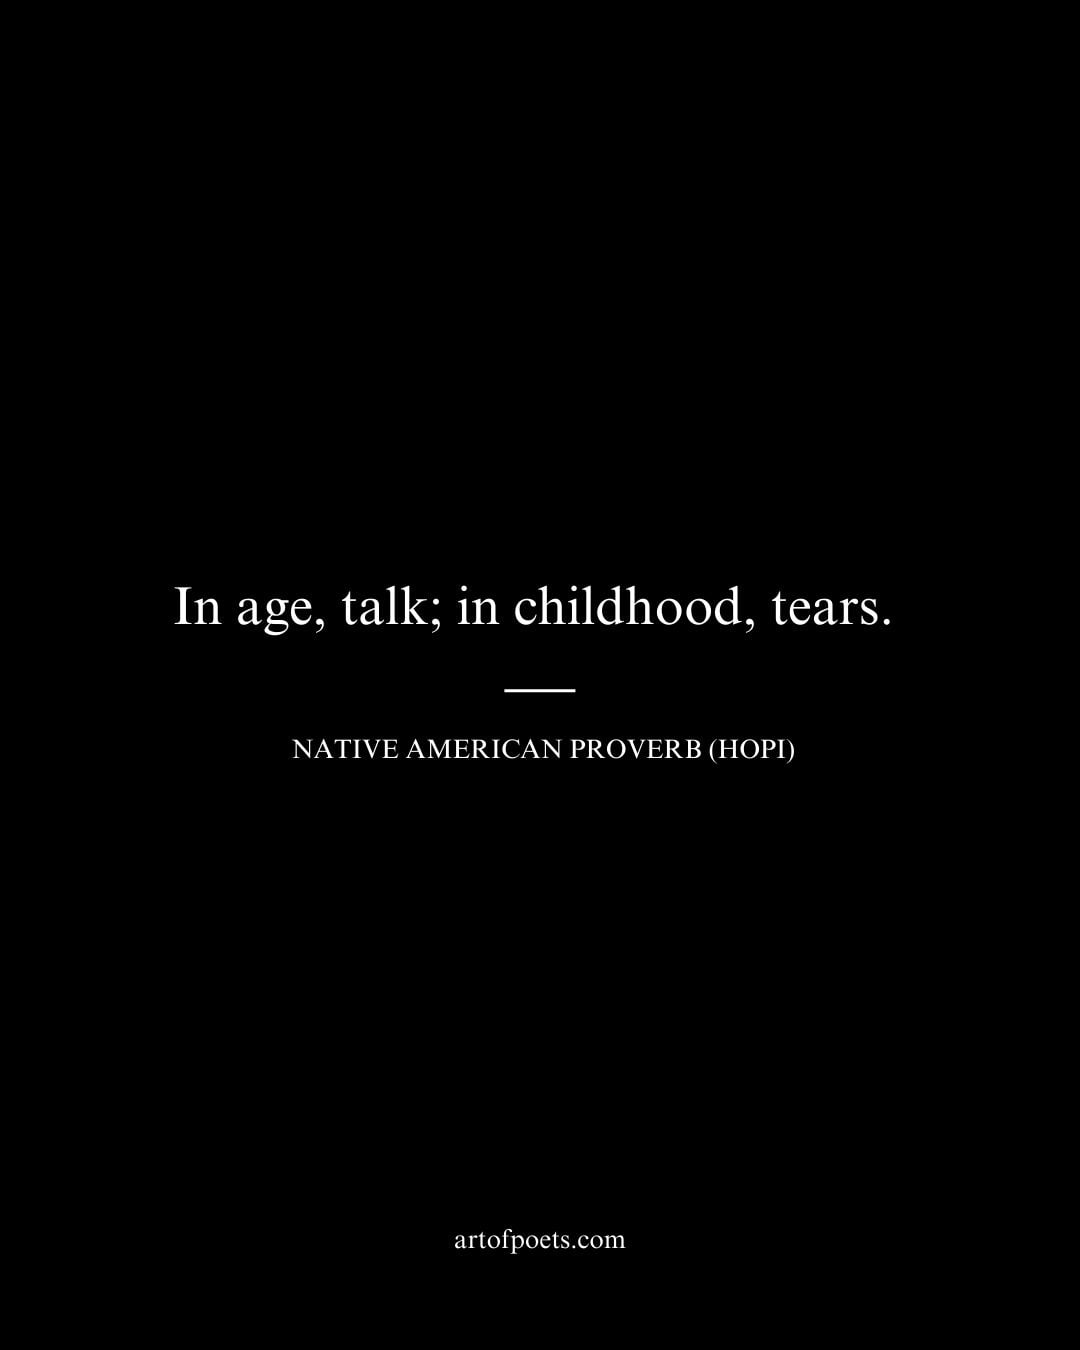 In age talk in childhood tears